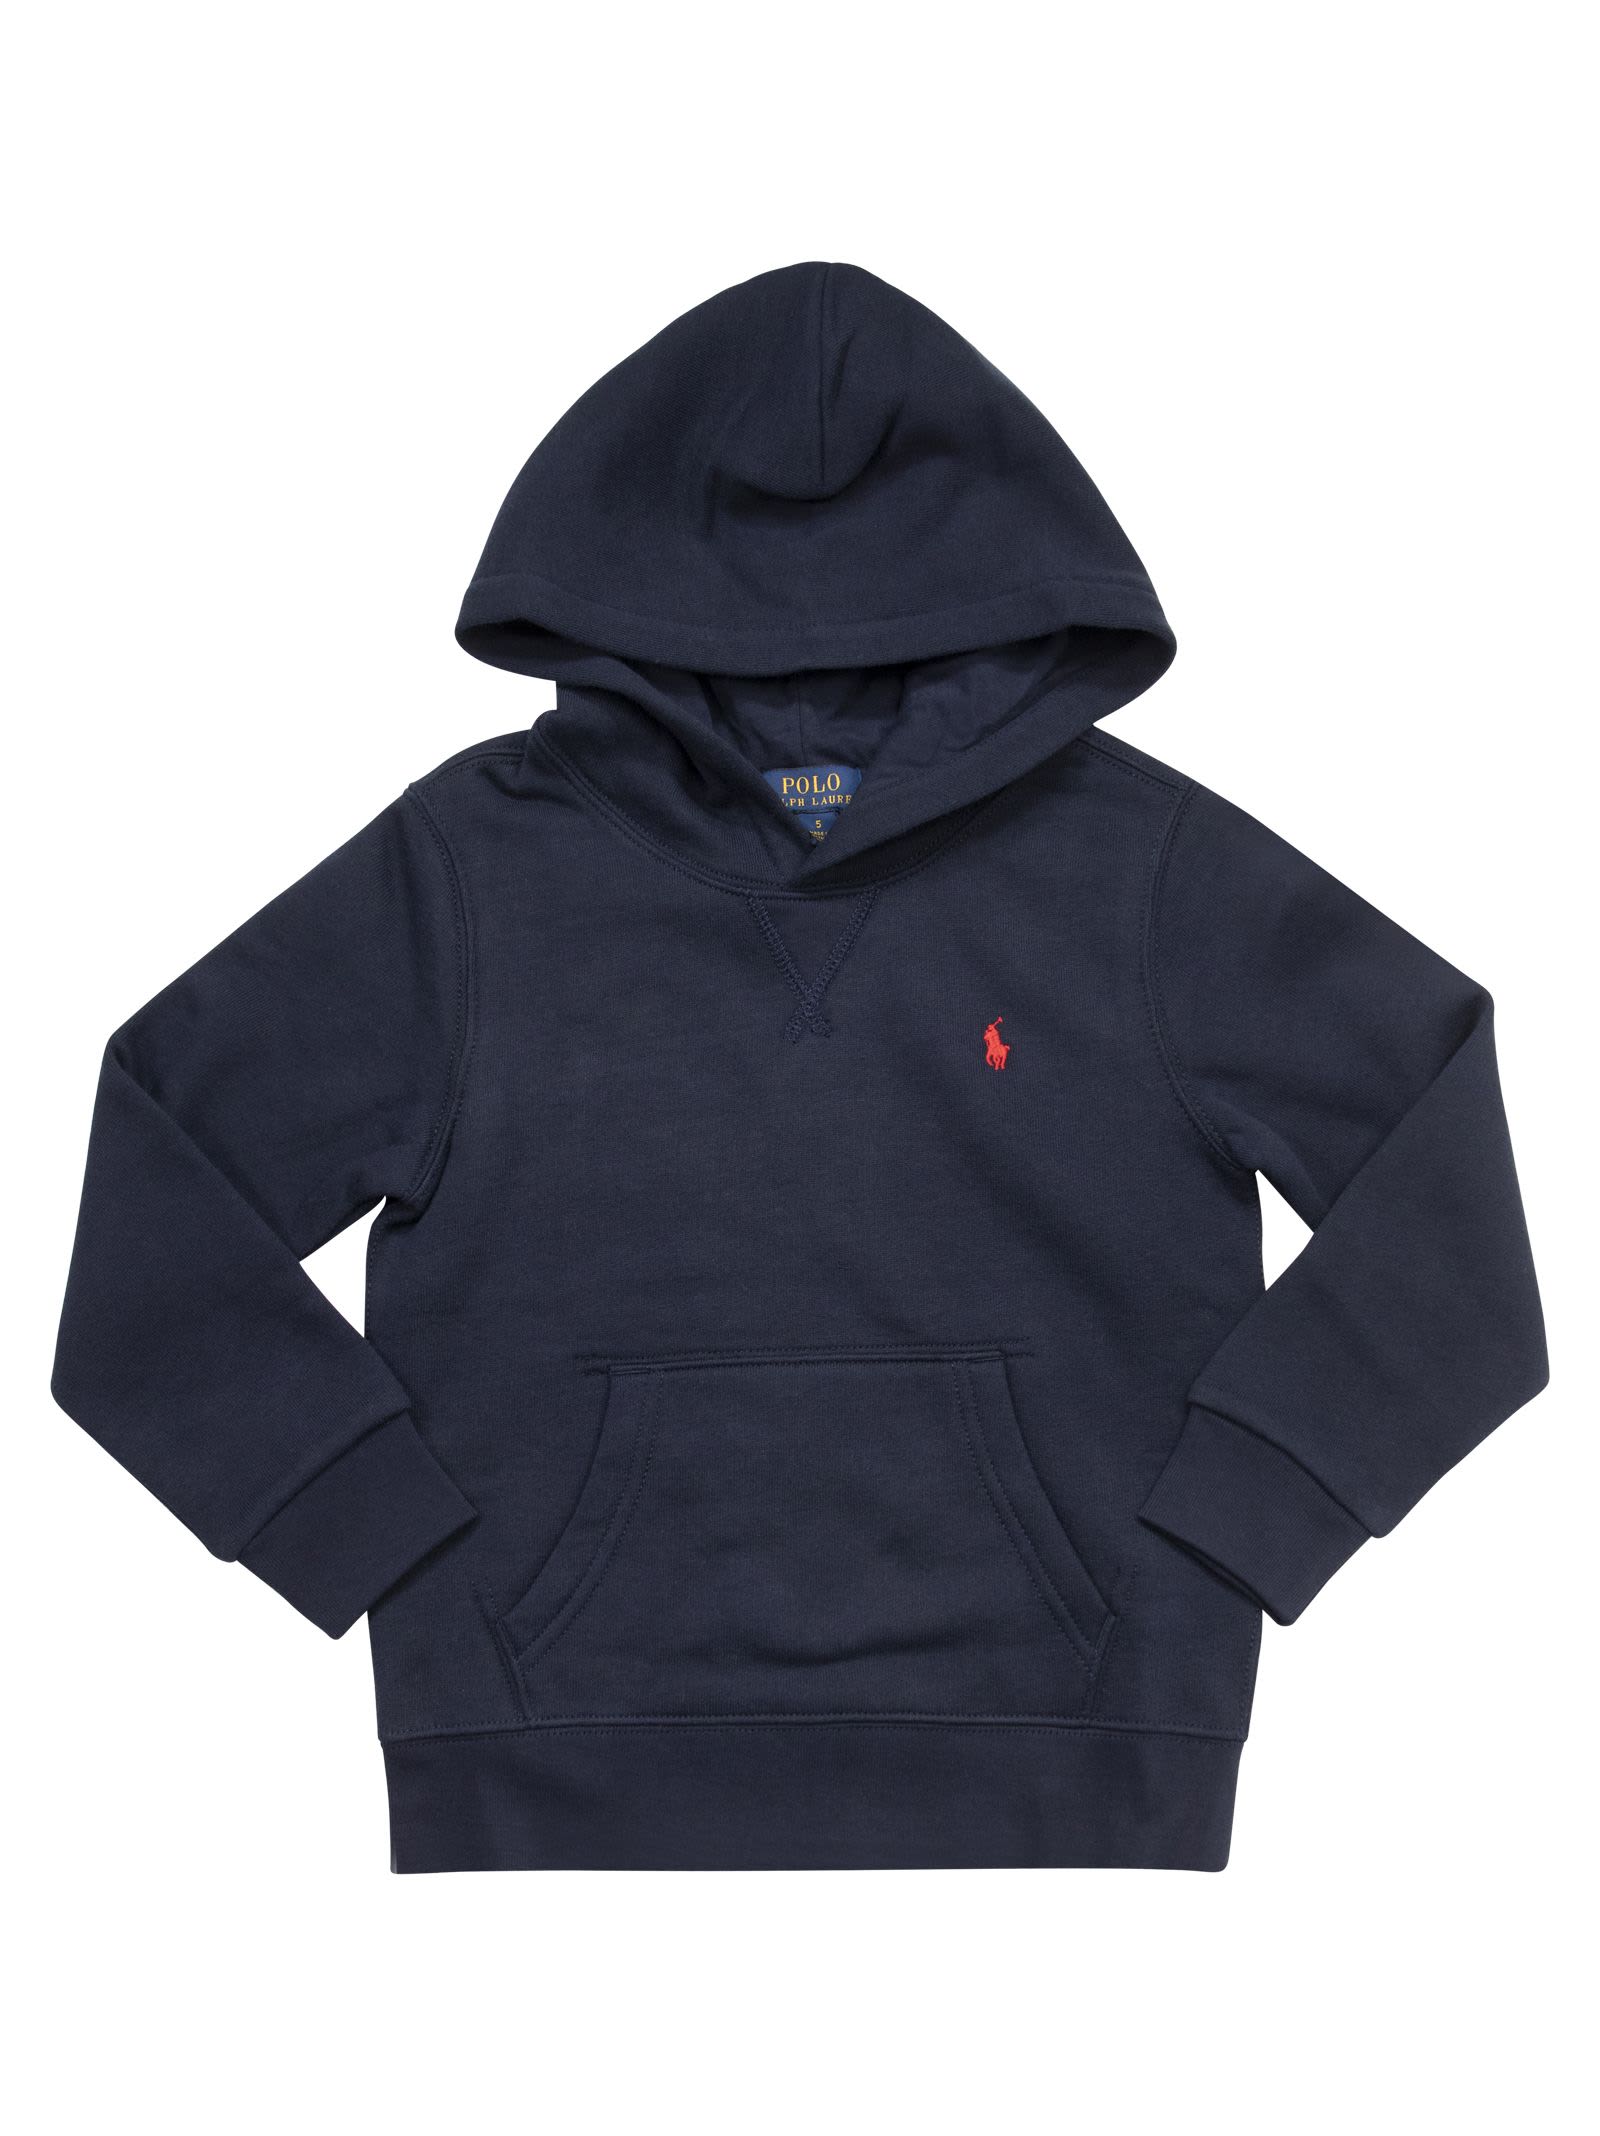 Polo Ralph Lauren Kids' Hooded Sweatshirt In Navy